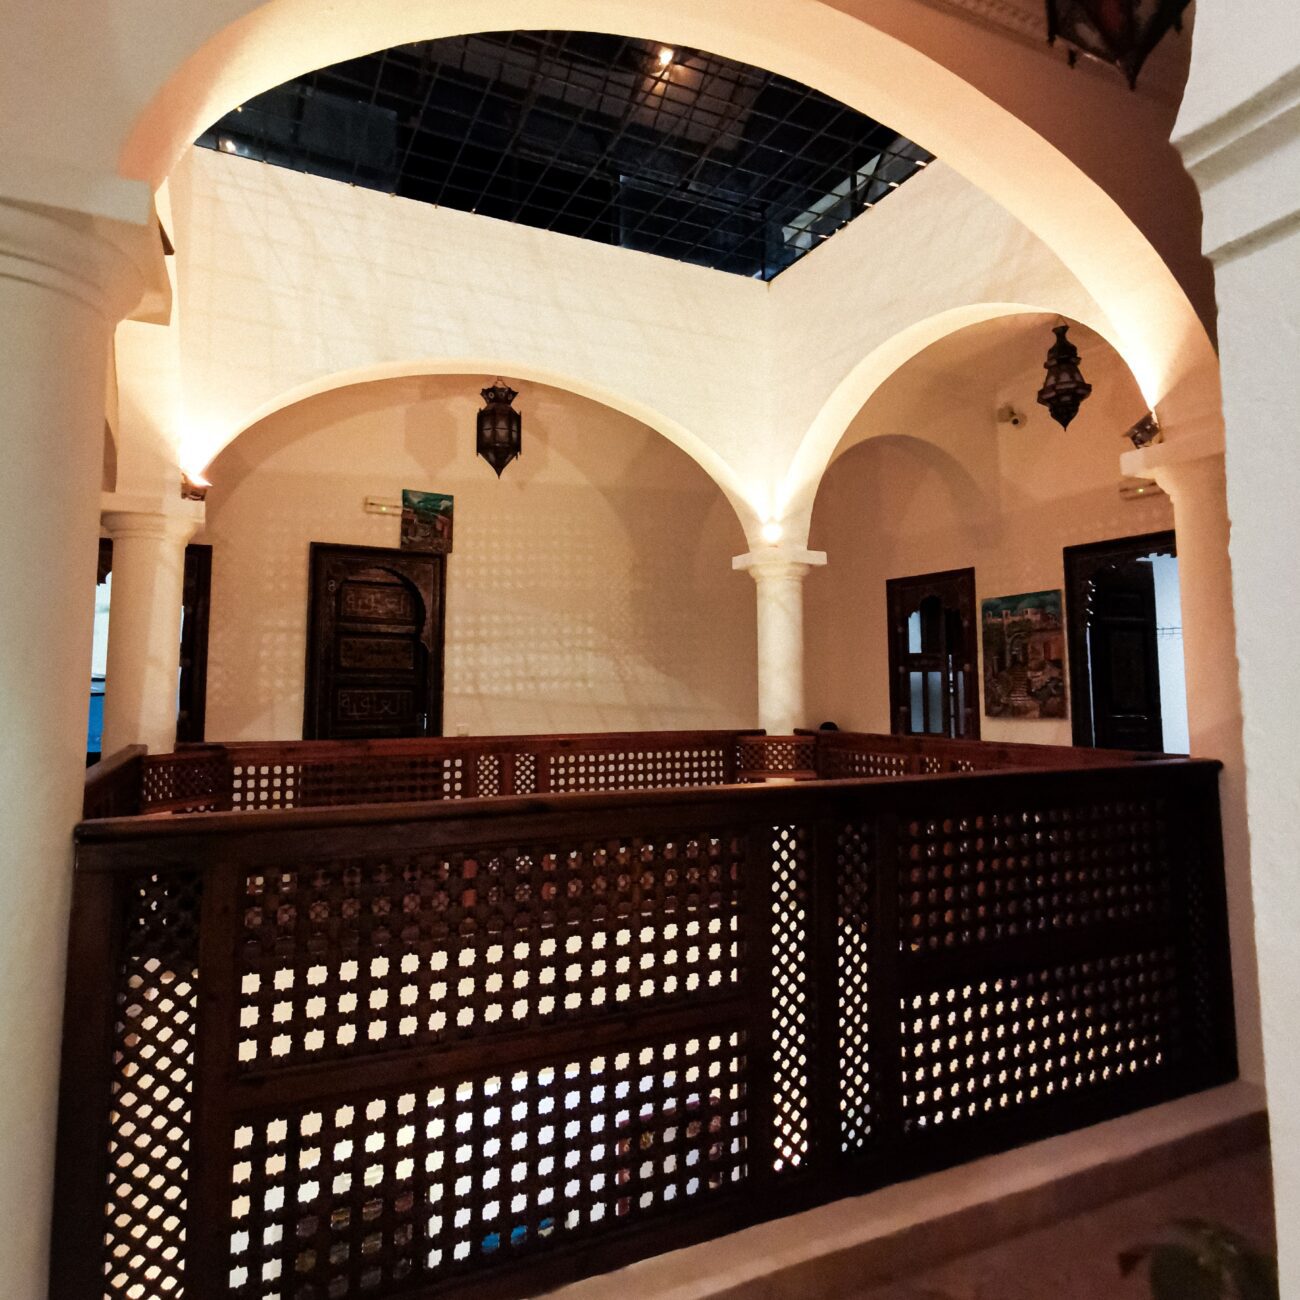 Tradiční riad hotel v Maroku